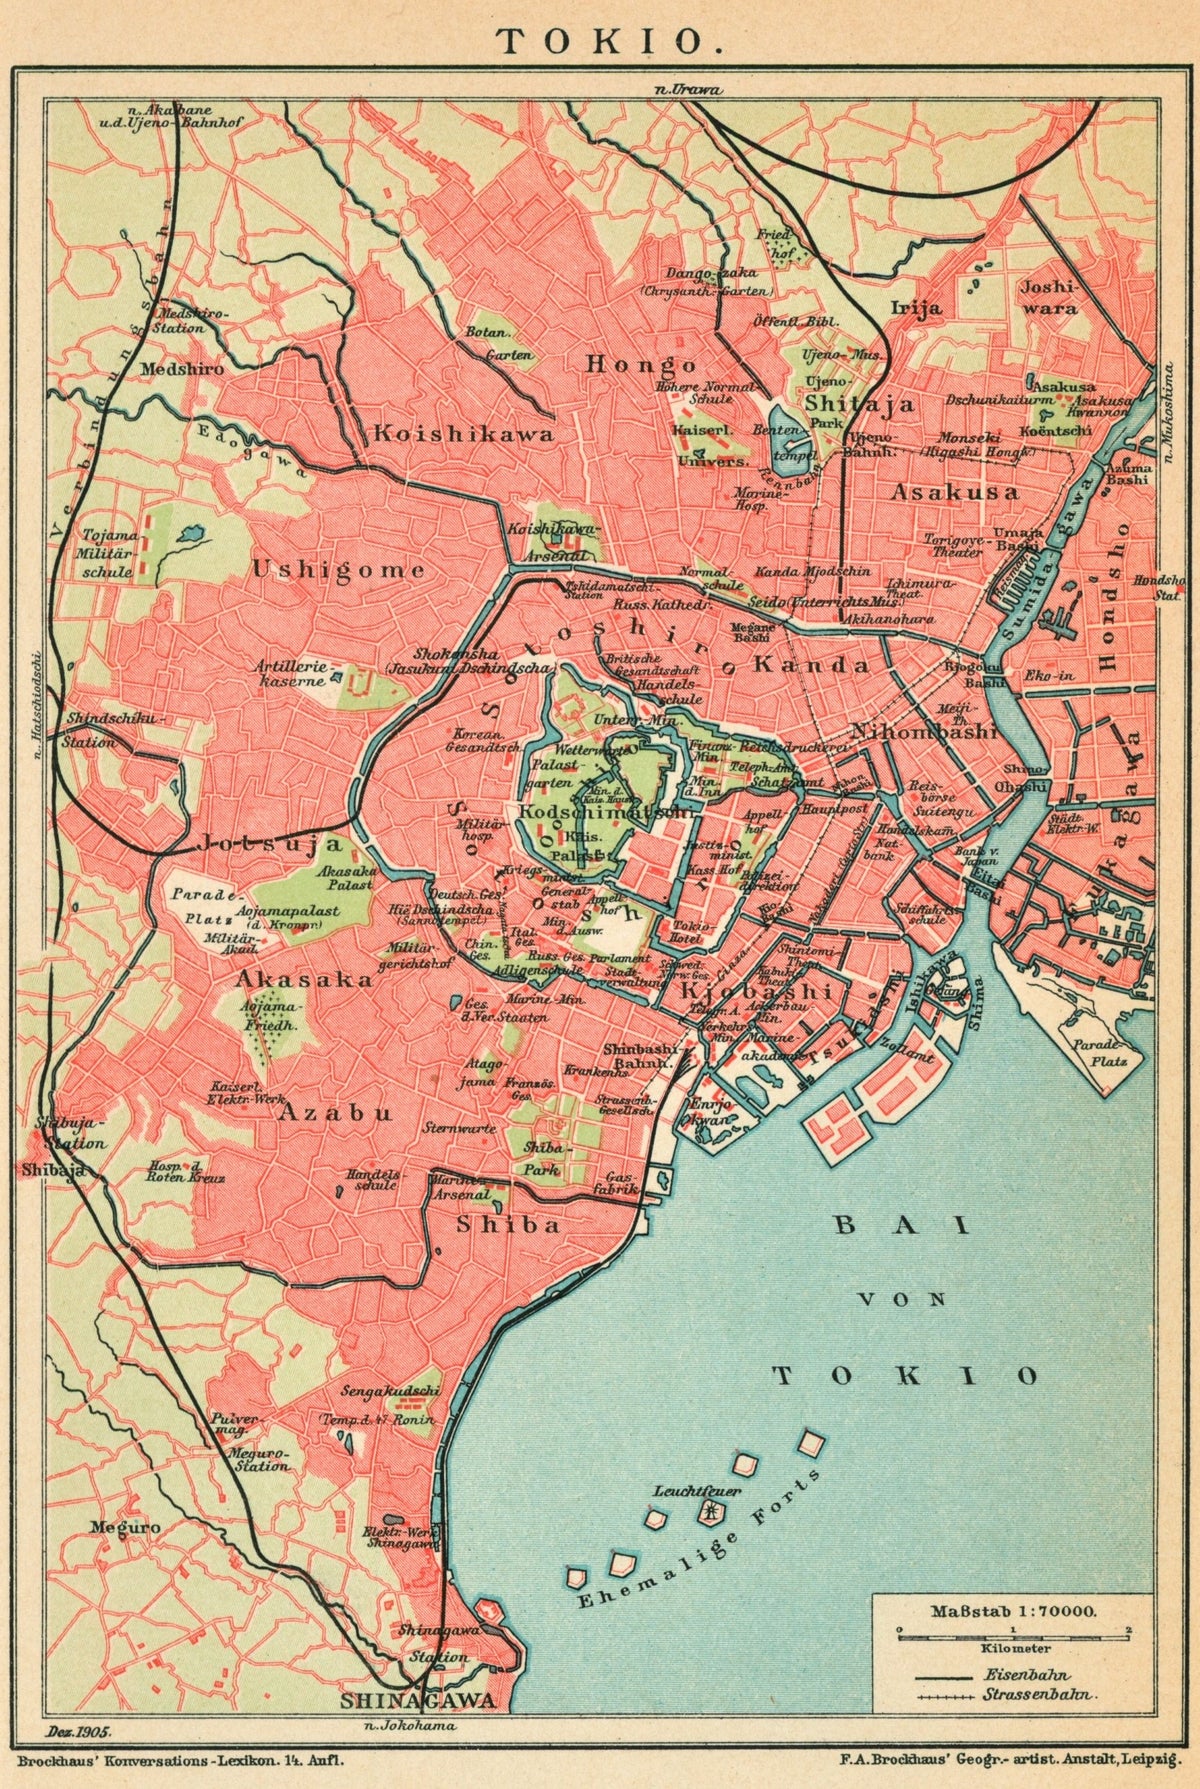 Tokyo, Japan City Plan- Antique Map - Authentic Vintage Antique Print